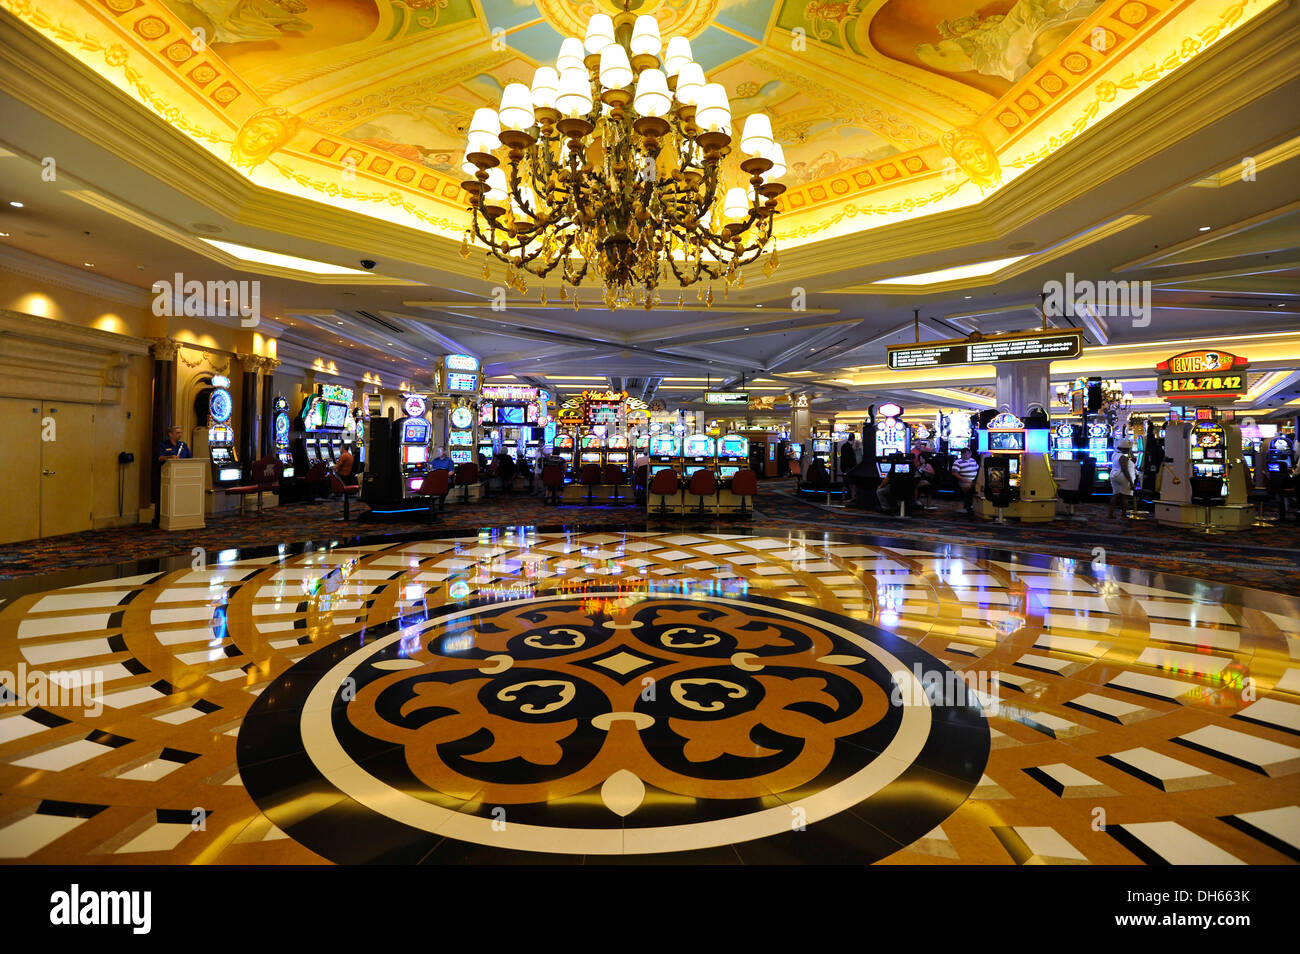 5 Stars Casino